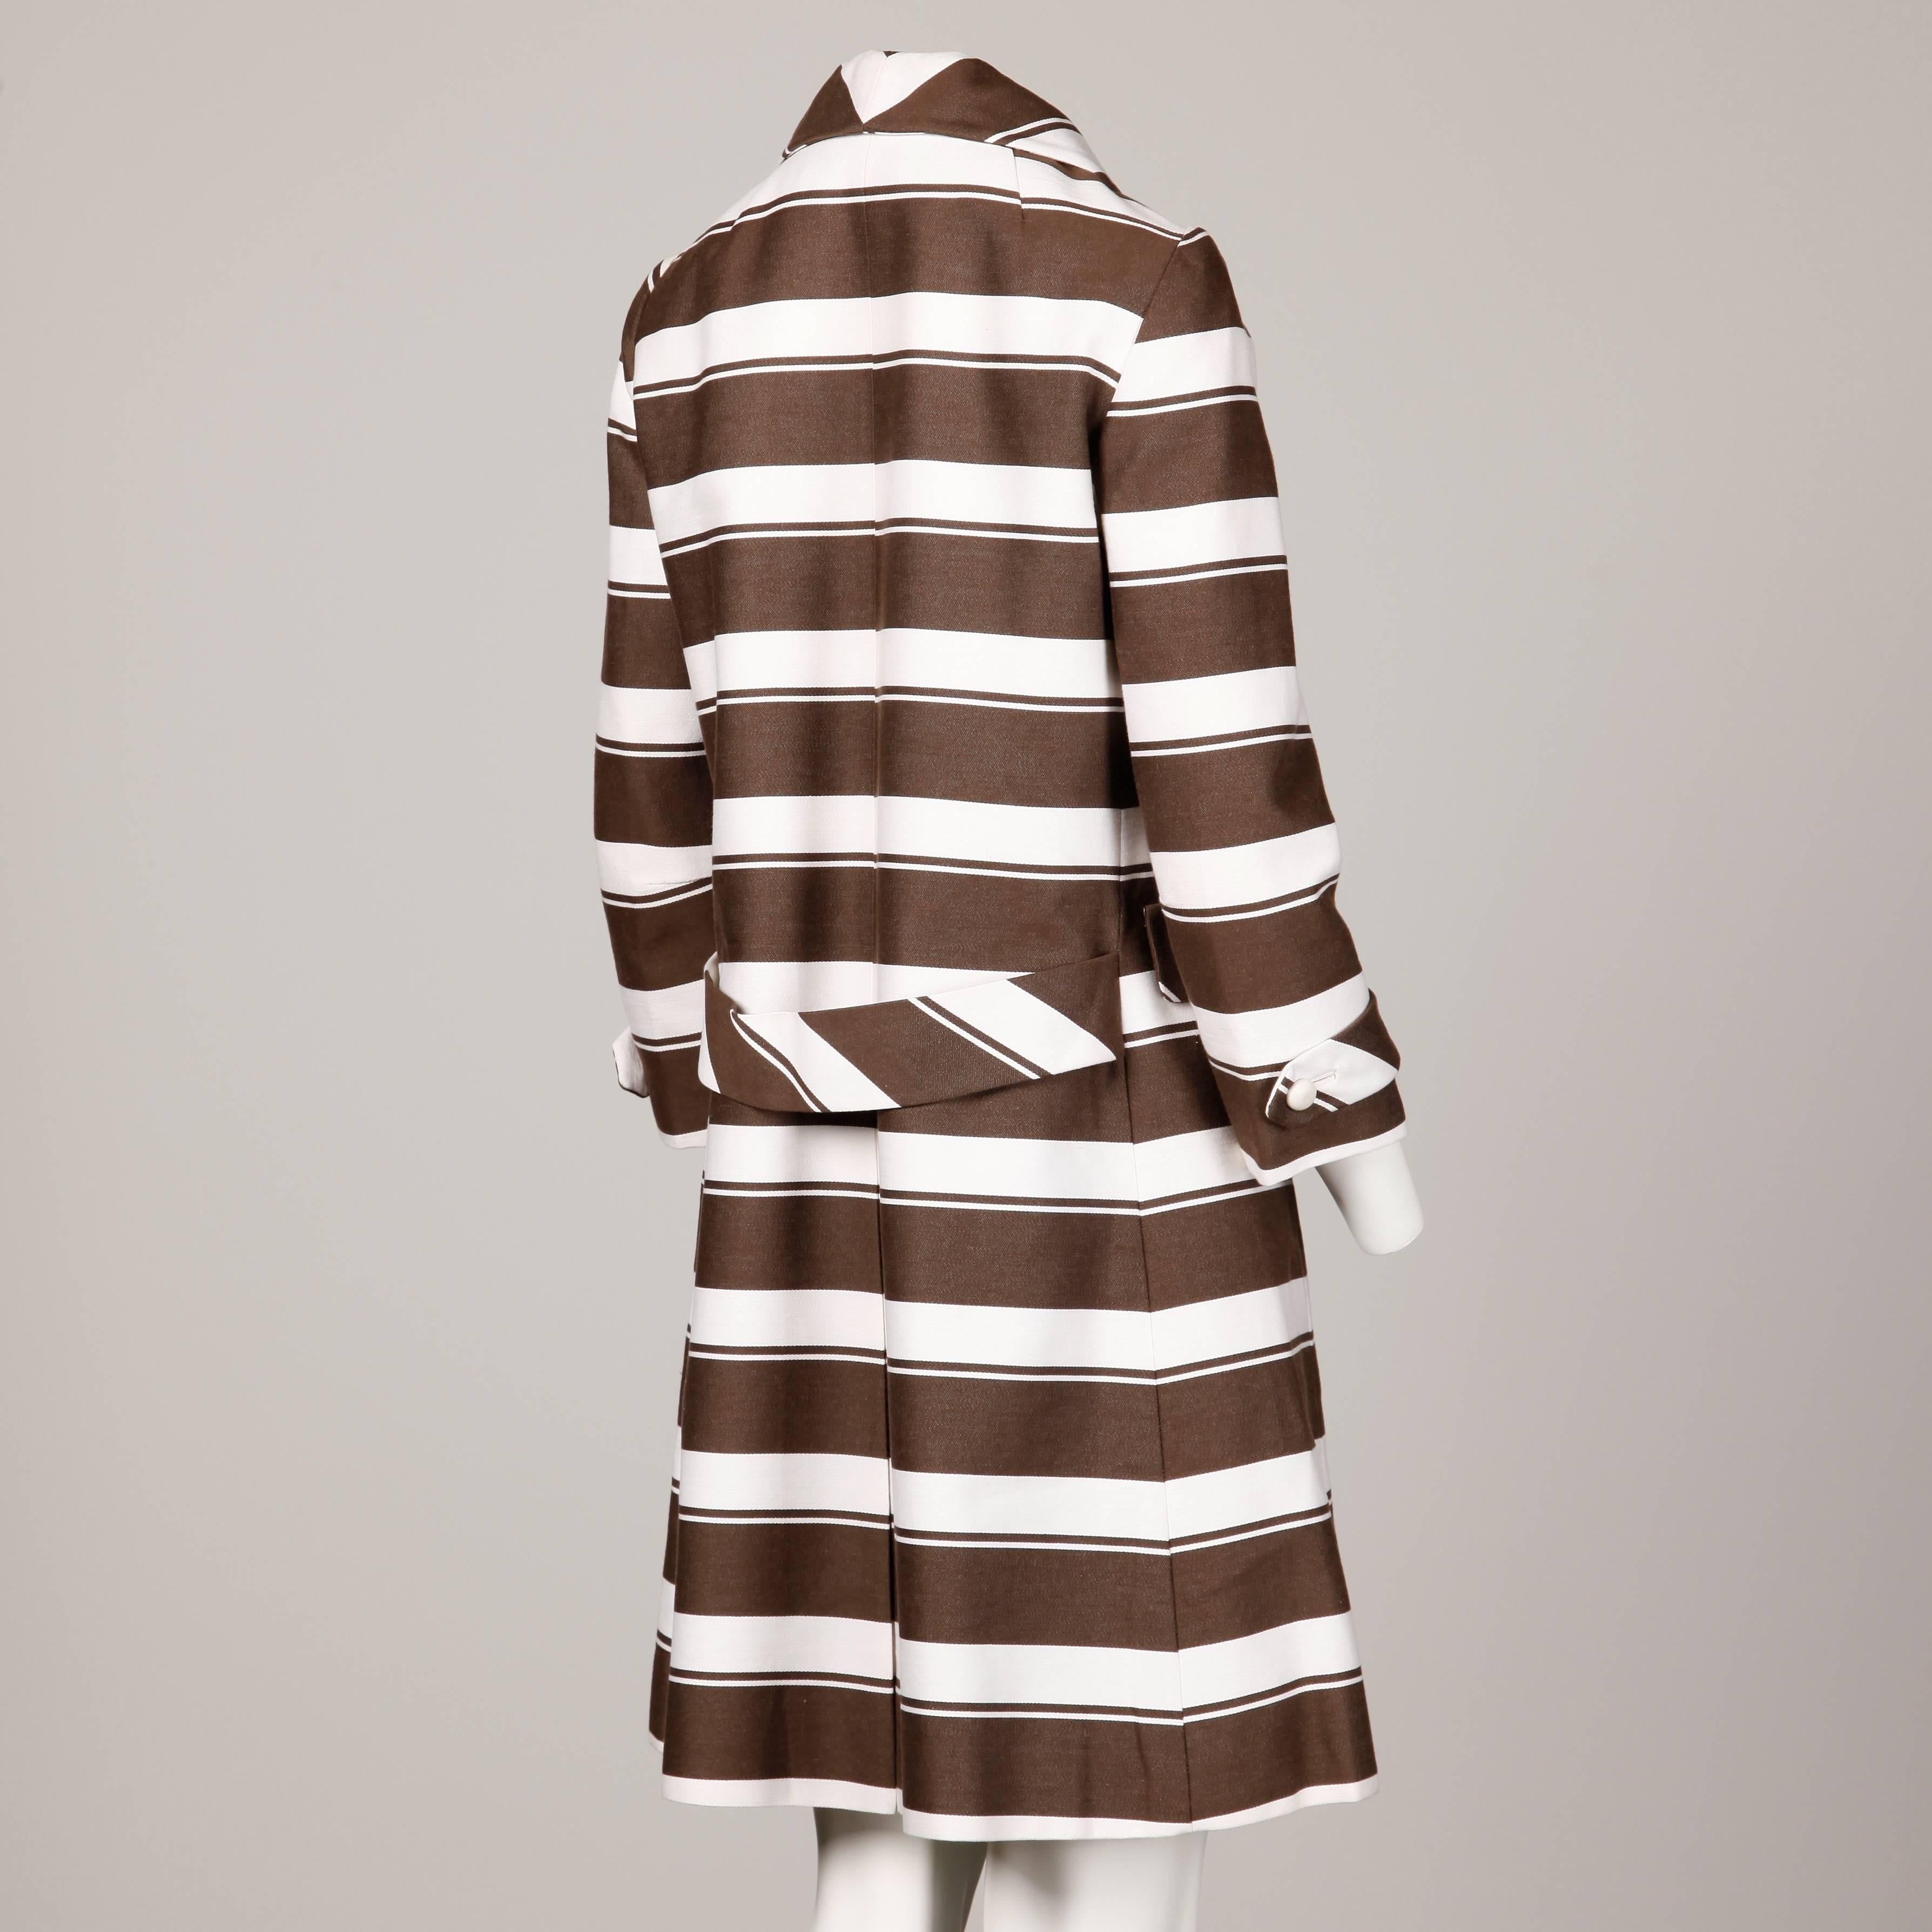 sandra sheepskin coat